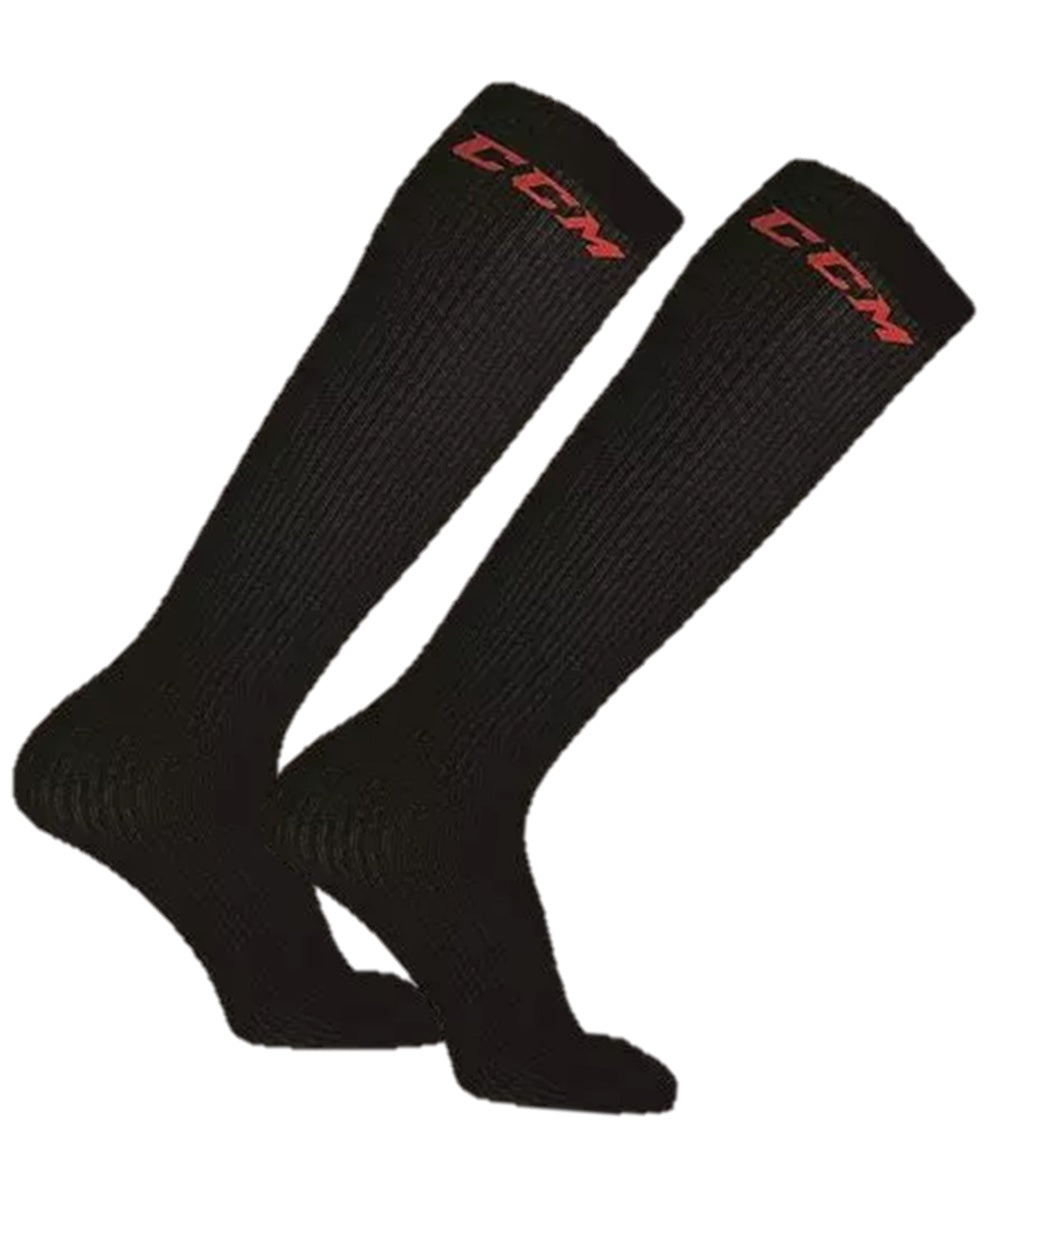 CCM ice hockey skate socks liner socks senior black long